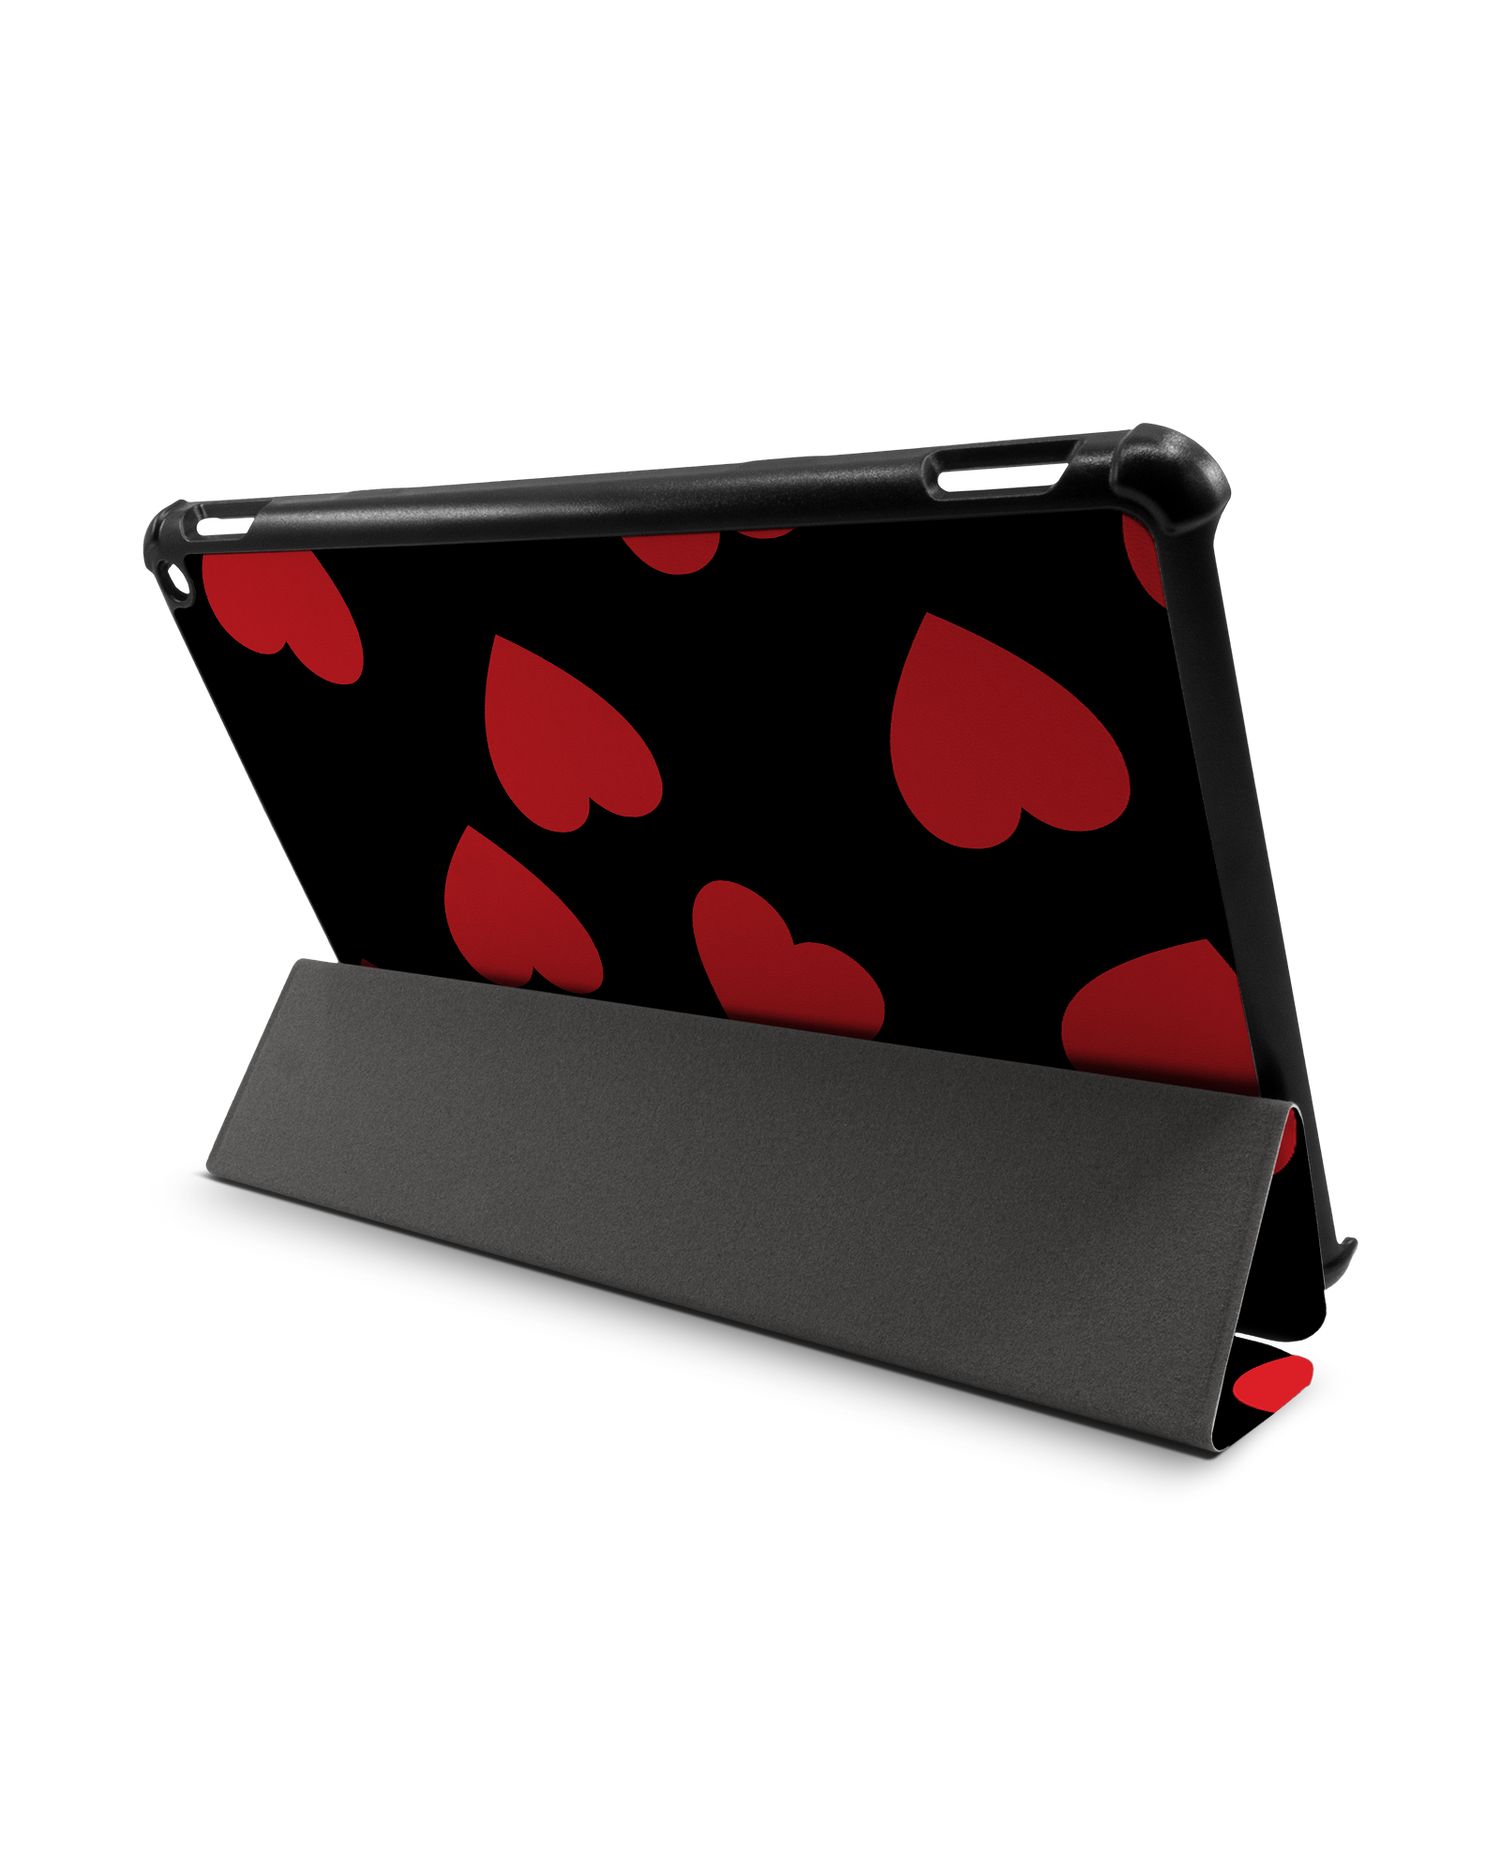 Repeating Hearts Tablet Smart Case für Amazon Fire HD 10 (2021): Aufgestellt im Querformat